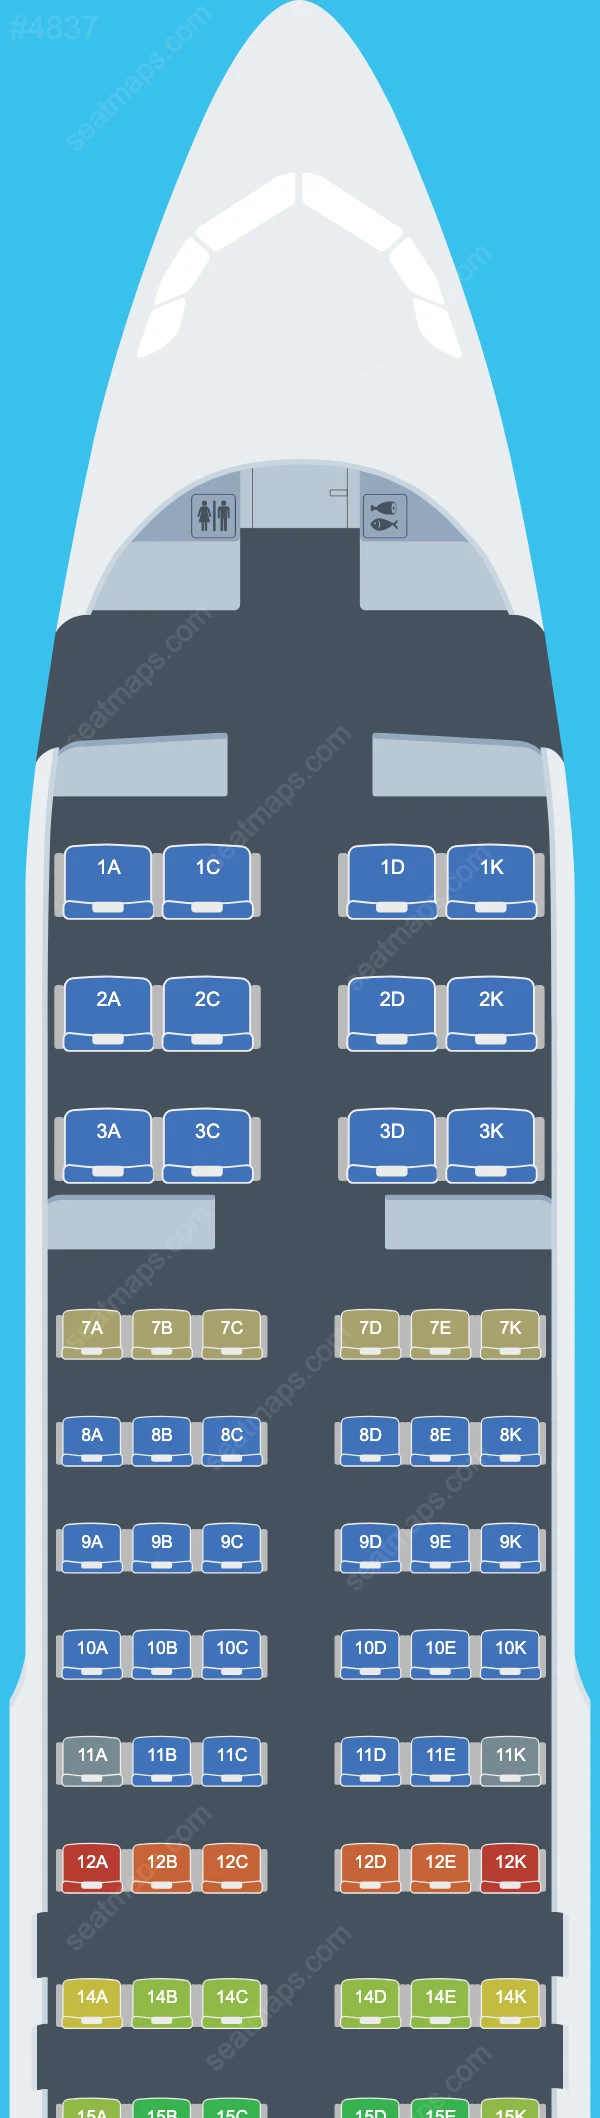 Avianca El Salvador Airbus A320 Plan de Salle A320-200